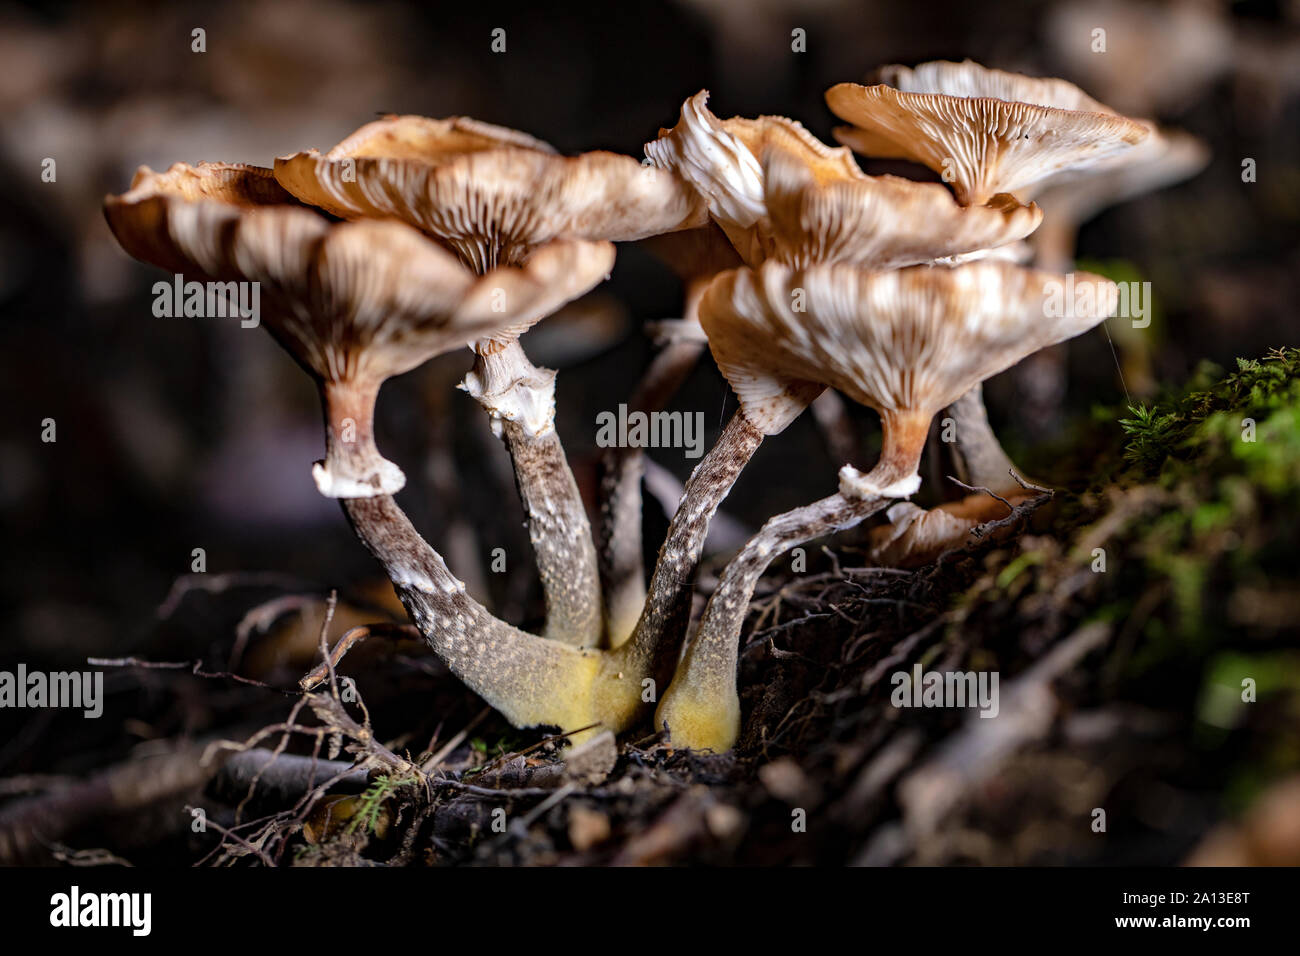 Gruppo di funghi o toadstools sul suolo della foresta di notte - Brevard, North Carolina, STATI UNITI D'AMERICA Foto Stock